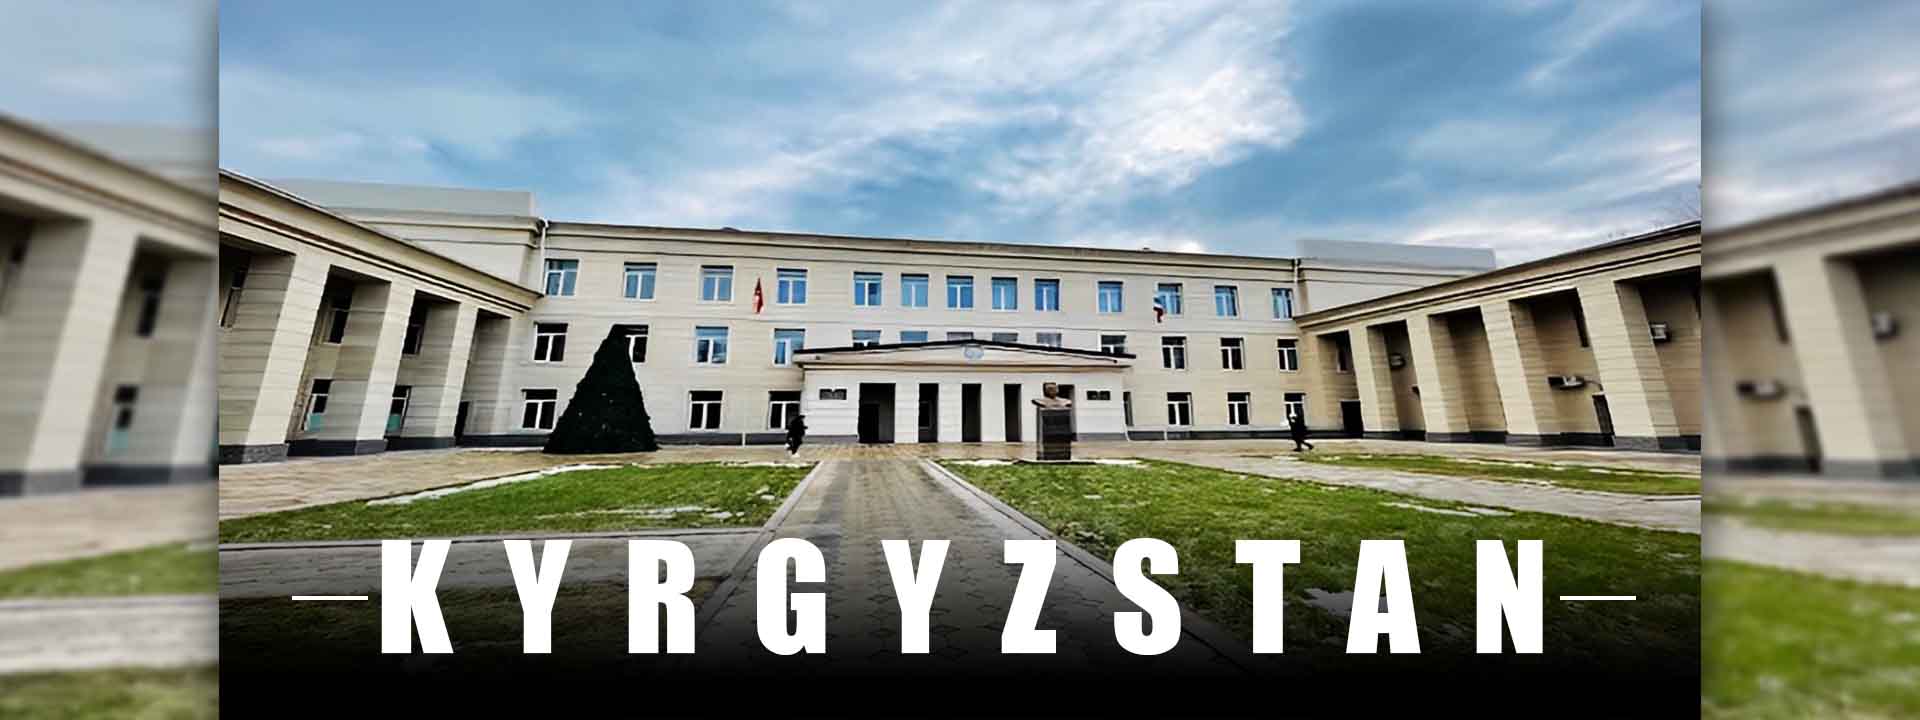 kyrgyzstan-college